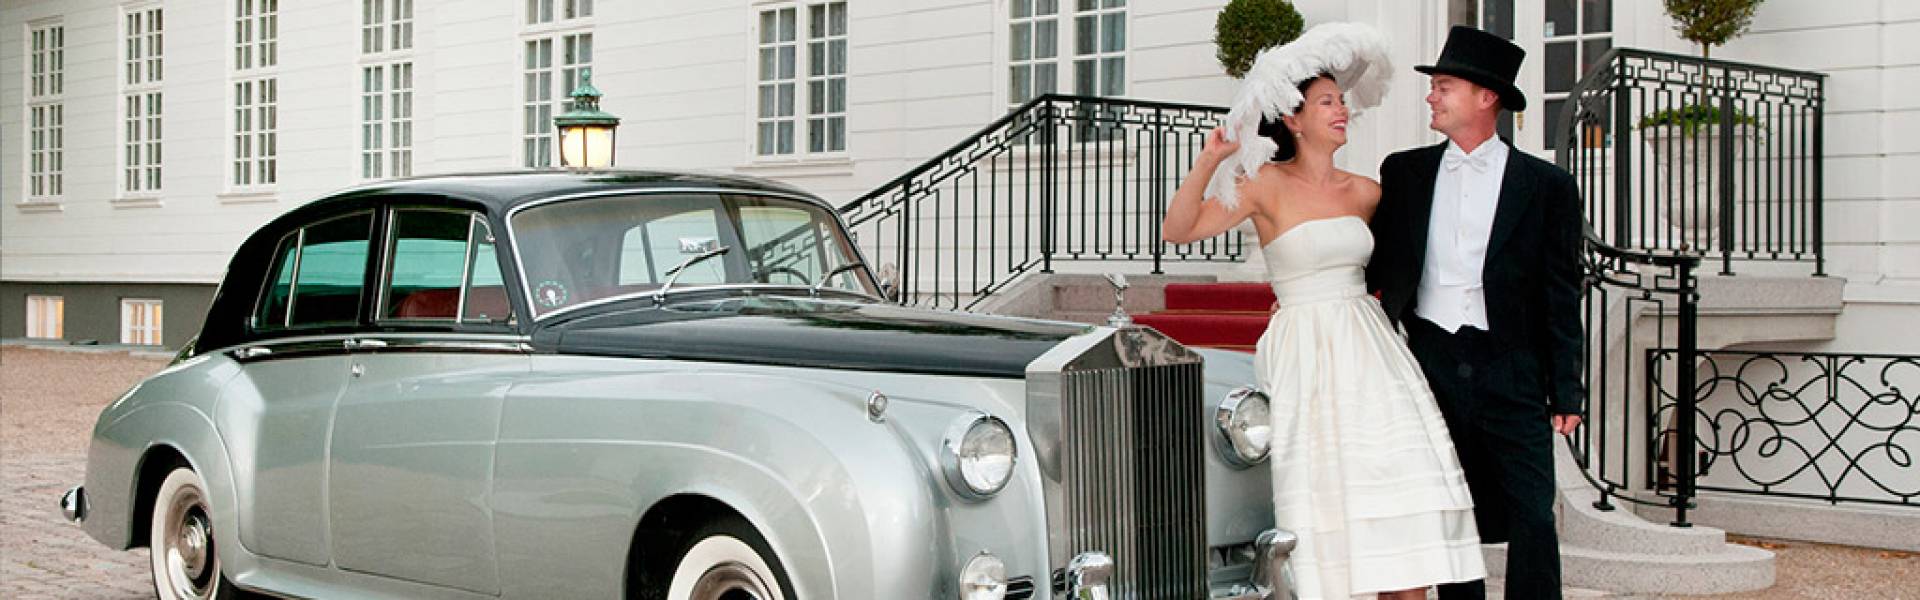 New Delhi classic wedding car hire - BookAclassic